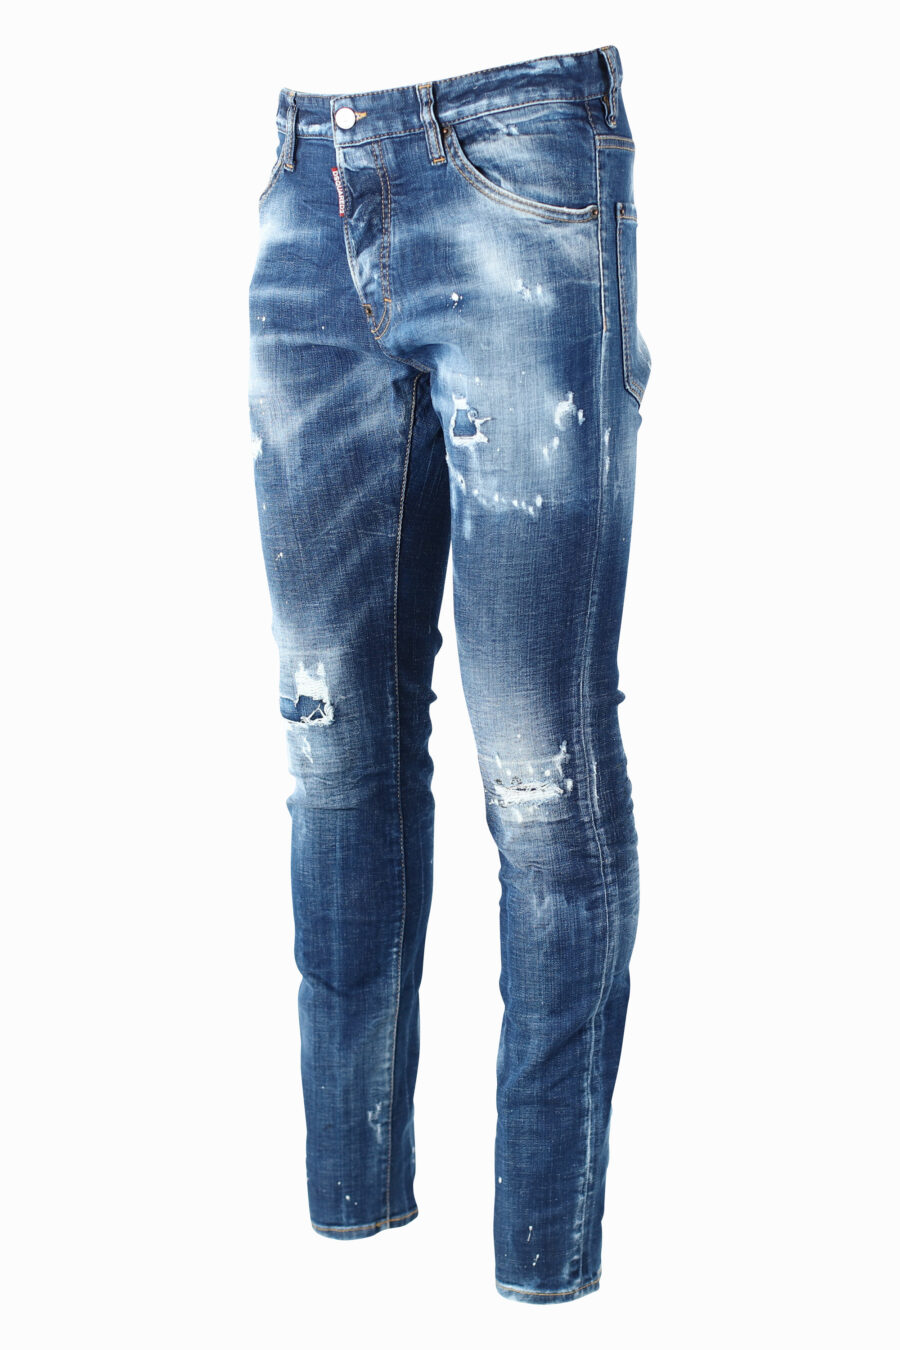 Pantalón vaquero "Cool Guy" azul semidesgastado con rotos - IMG 0989